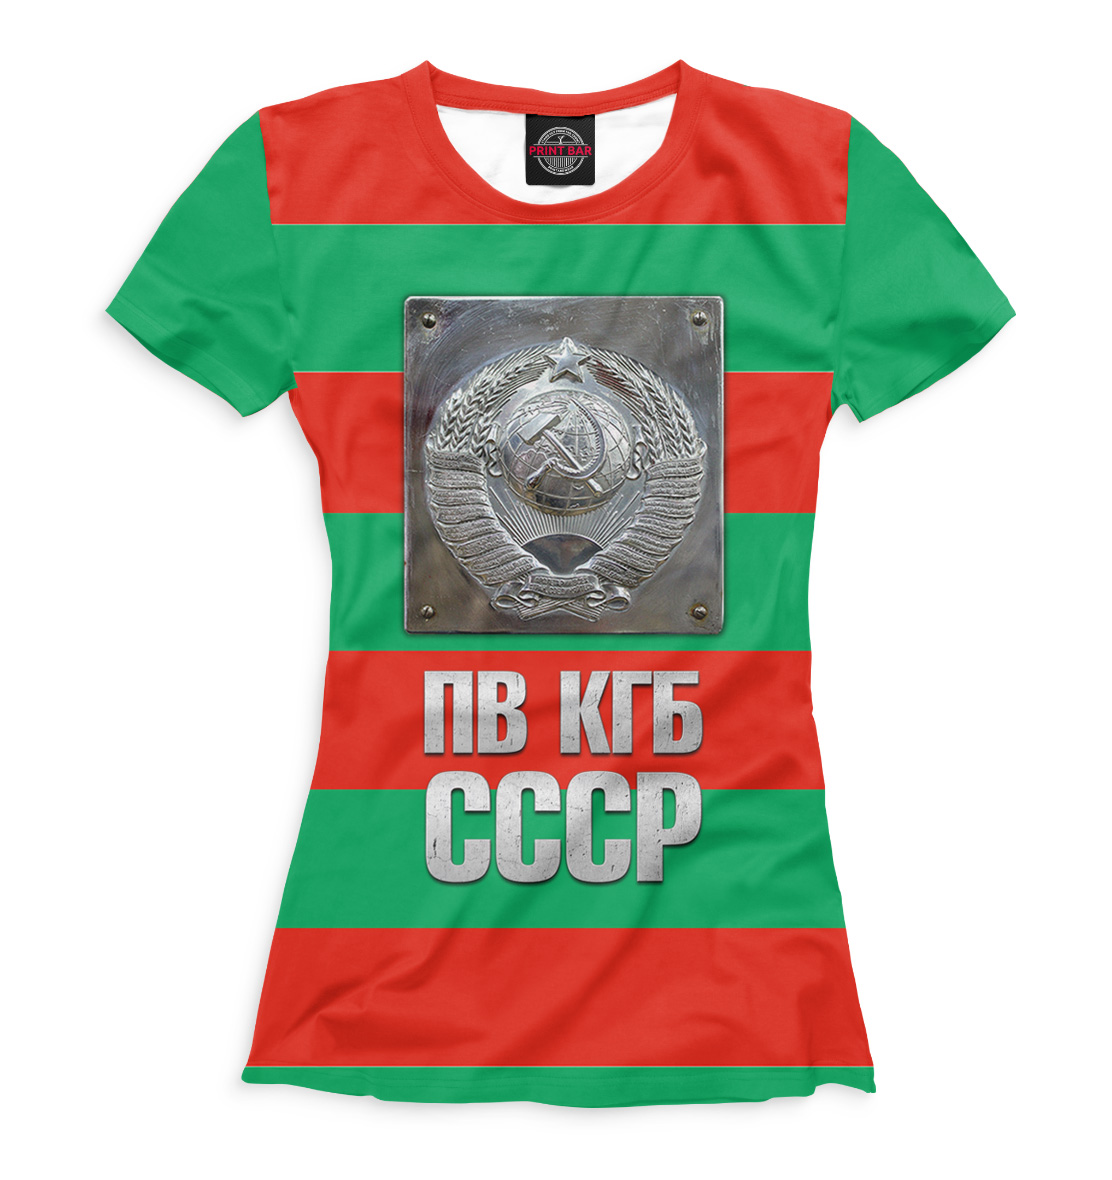 Футболка ПВ КГБ для женщин, артикул: ARM-886586-fut-1mp